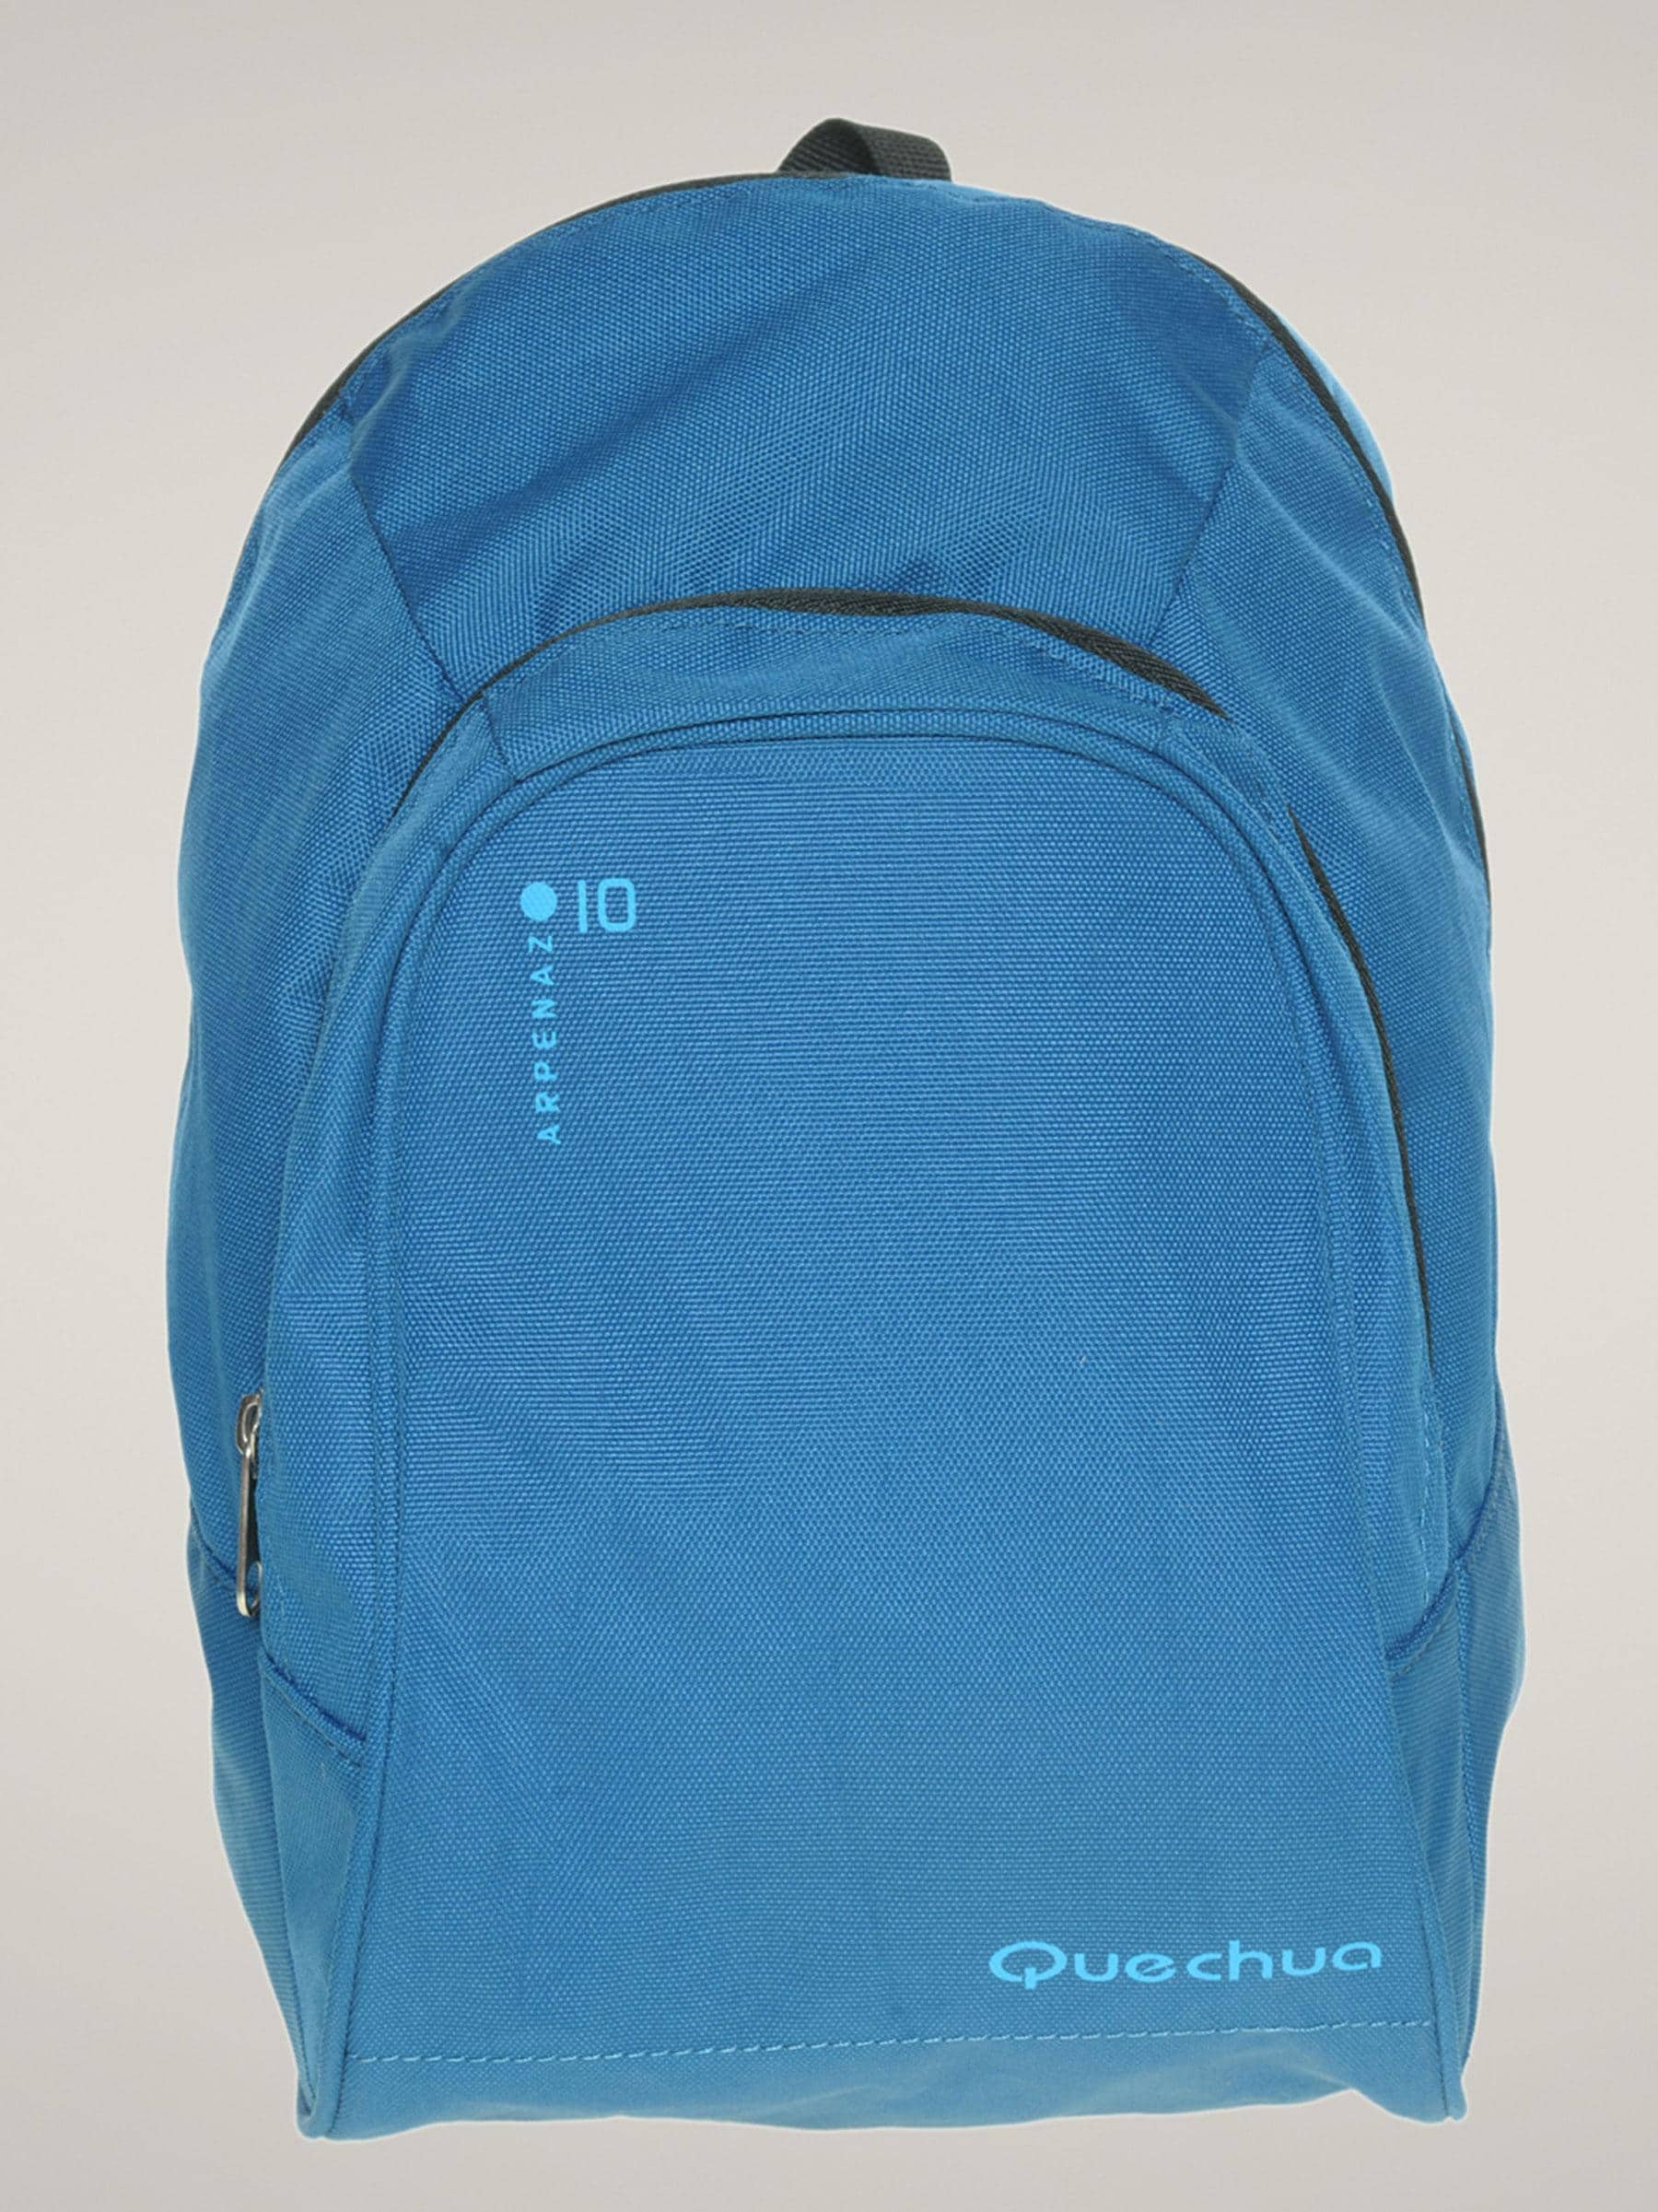 Quechua Blue Light Backpack